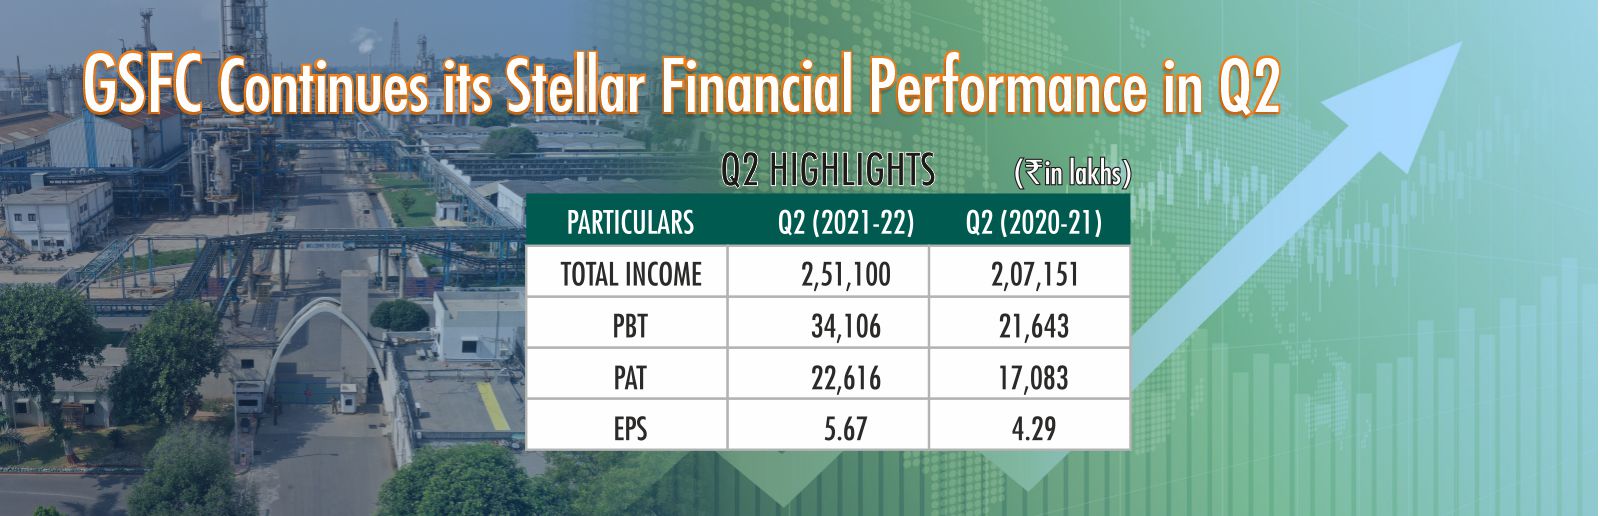 GSFC’s Quarter-2 Financial Performance